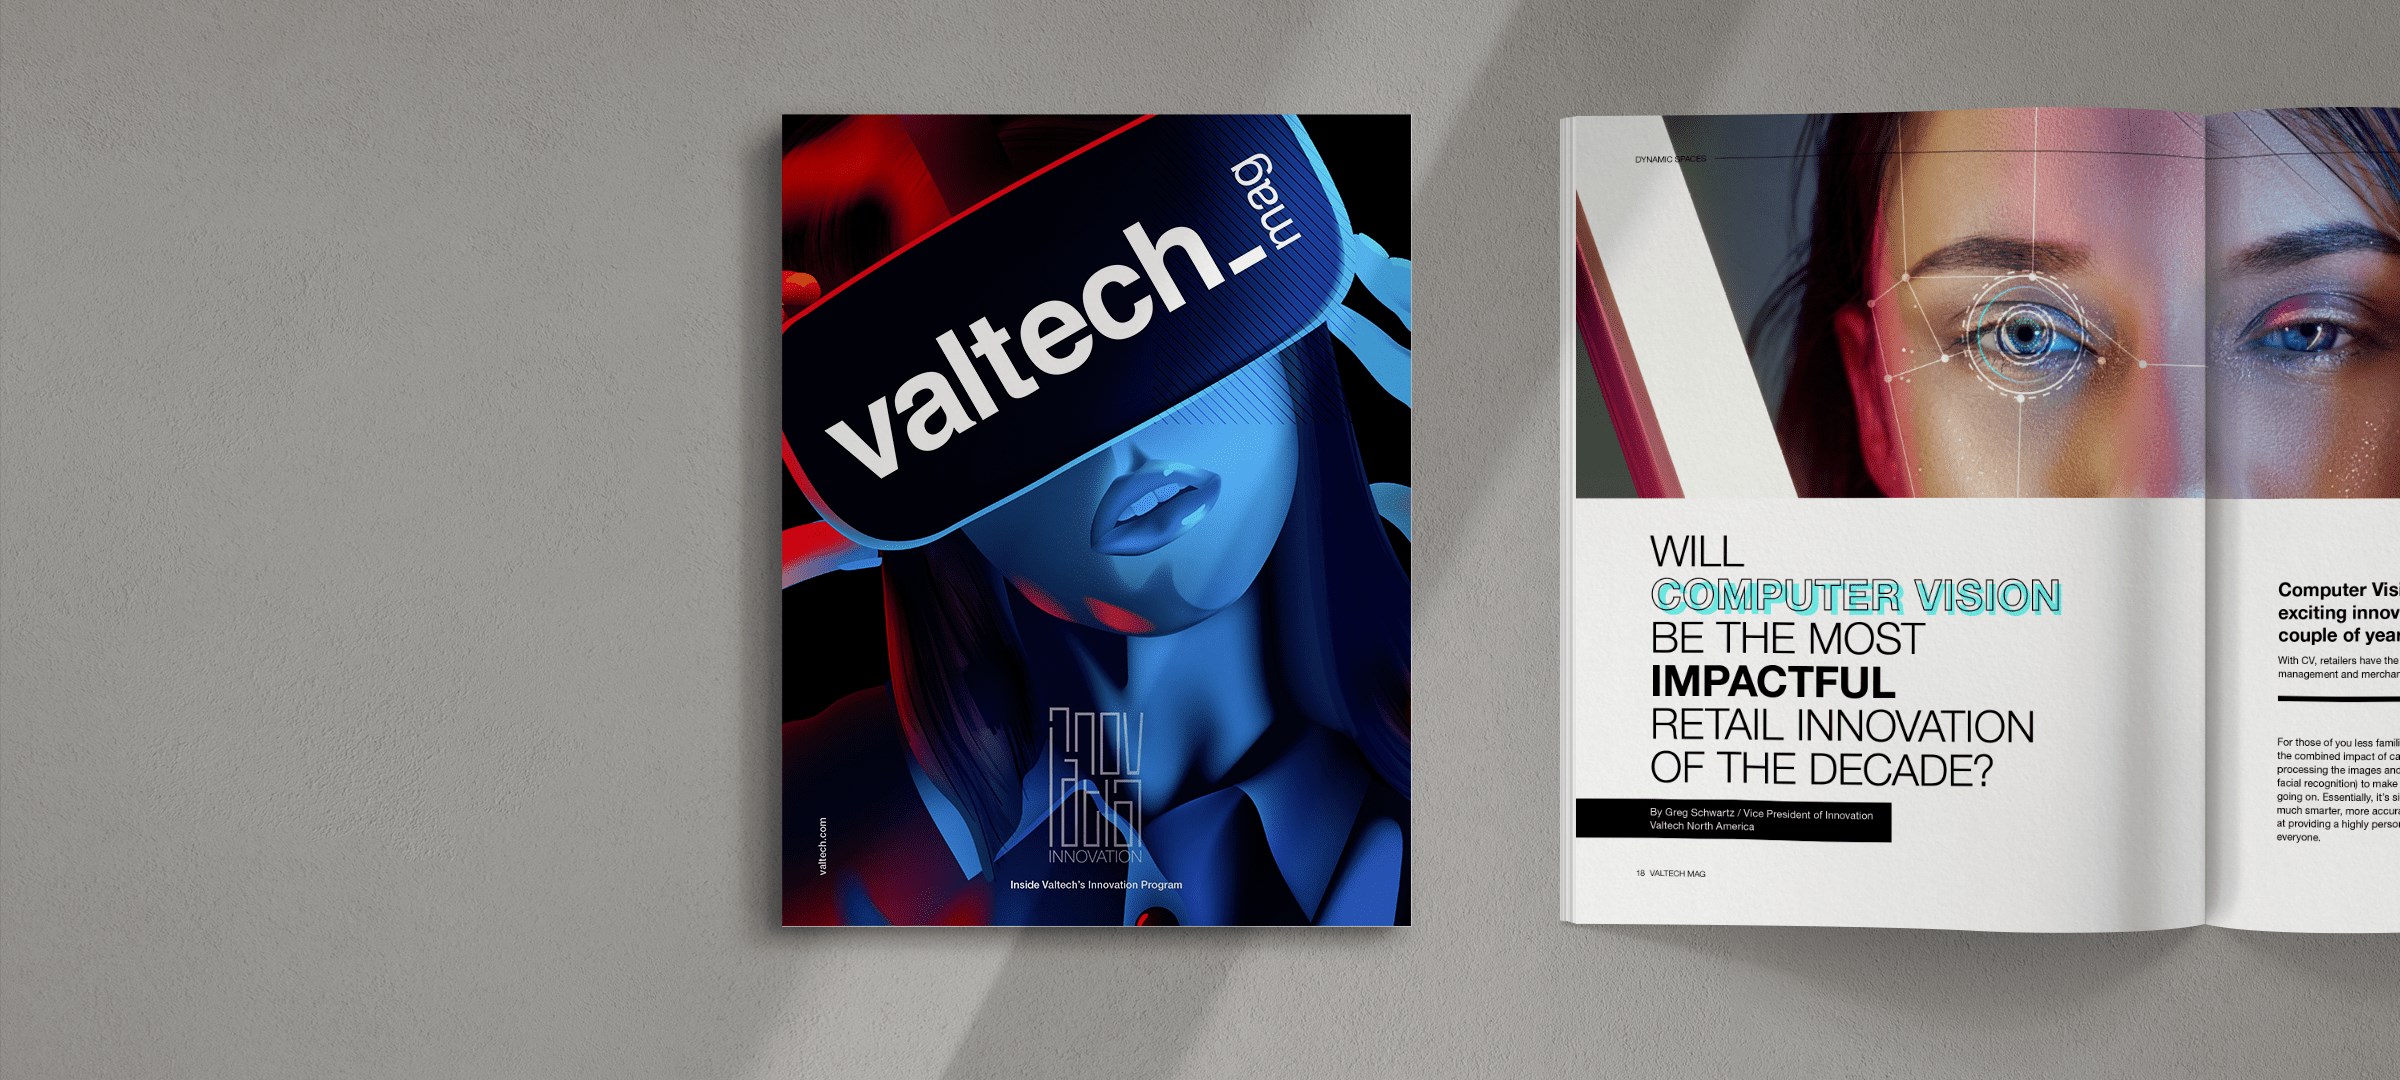 Valtech Mag Innovation Inside The Innovation Program Valtech